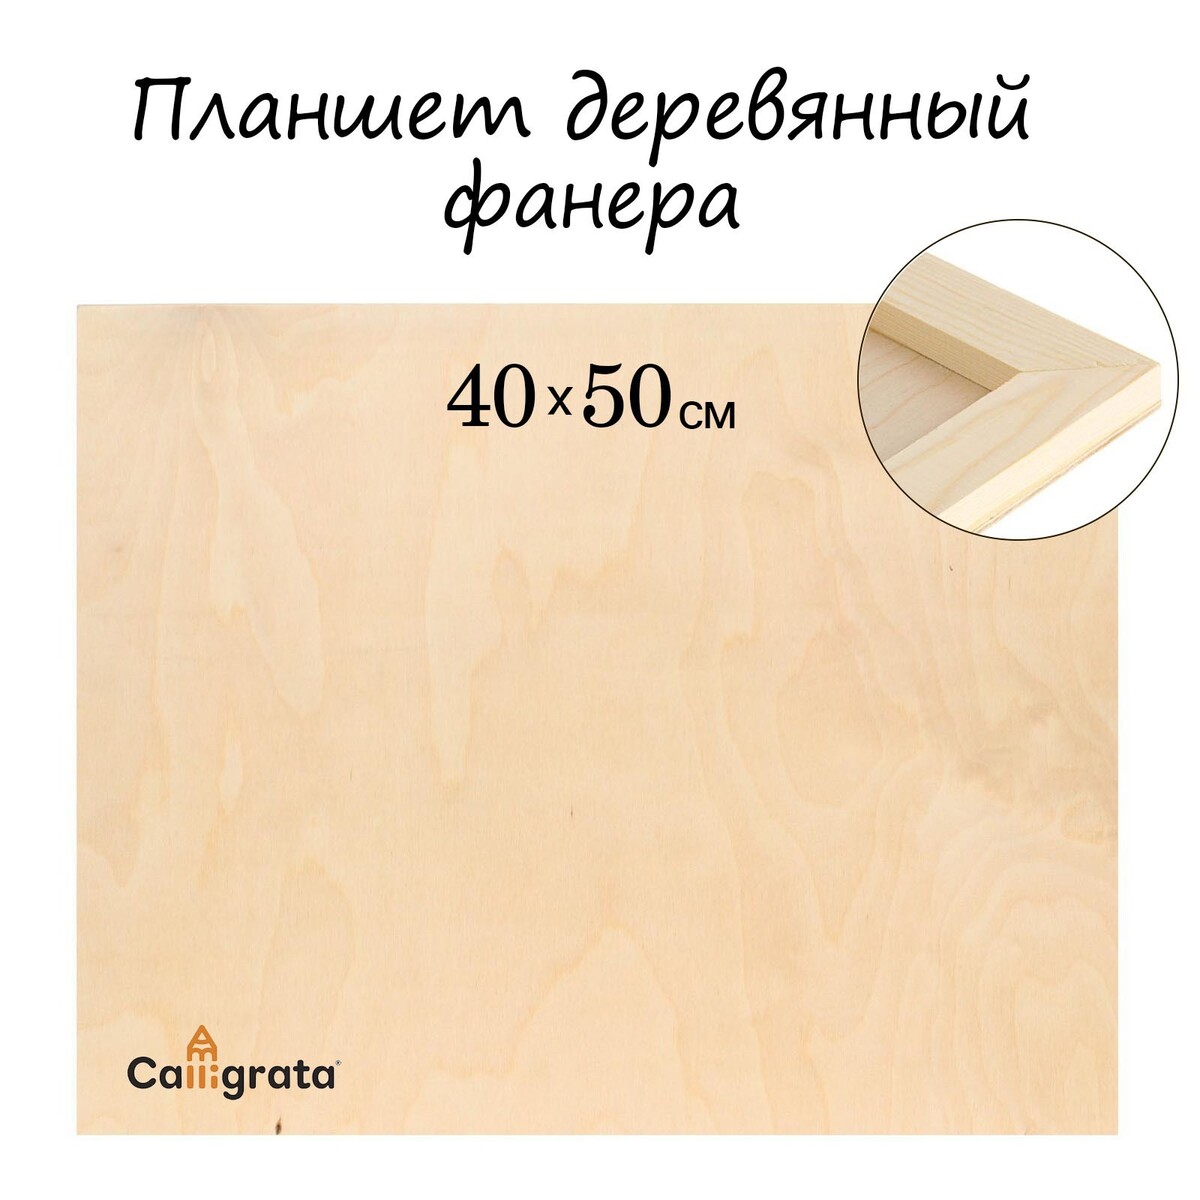 Планшет деревянный 40 х 50 х 2 см, фанера (для рисования эпоксидной смолой) планшет деревянный 30 х 40 х 2 см двп